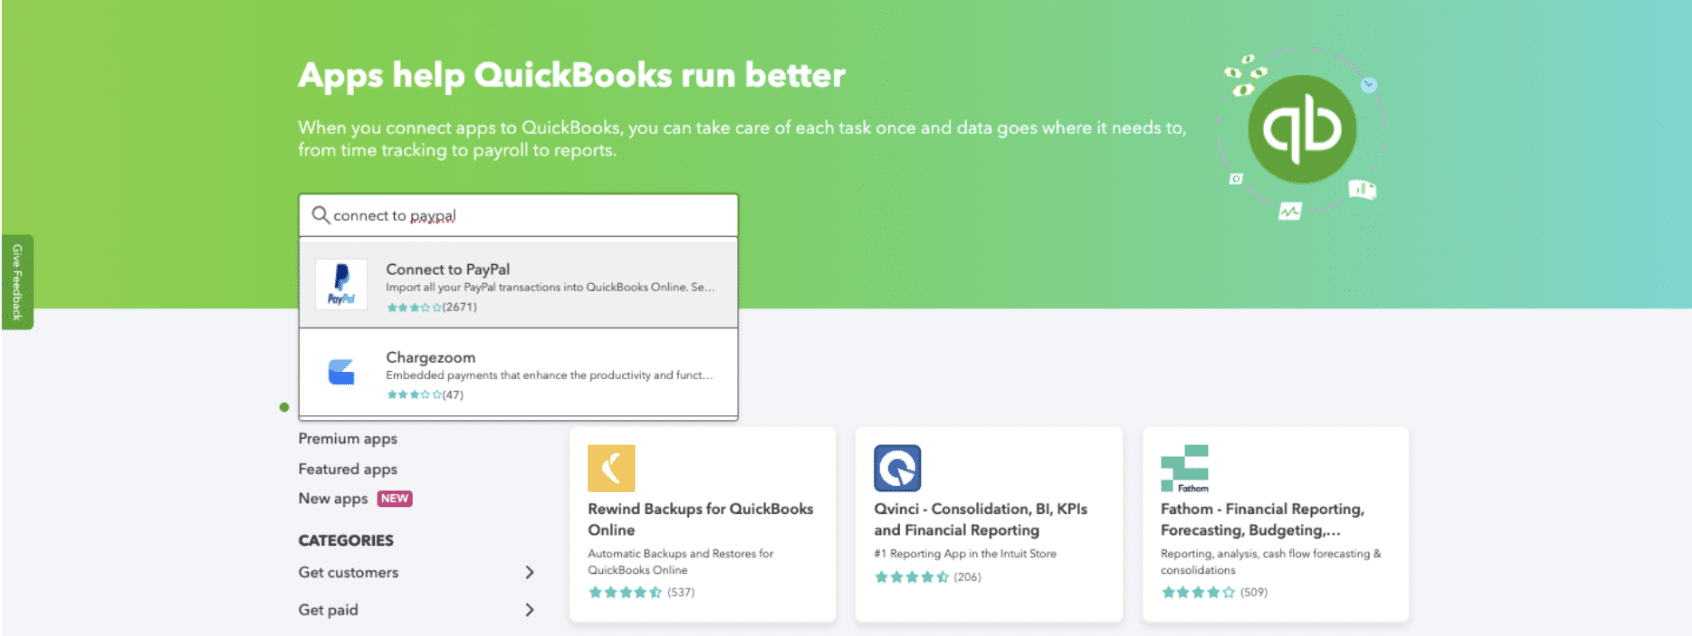 QuickBooks Apps